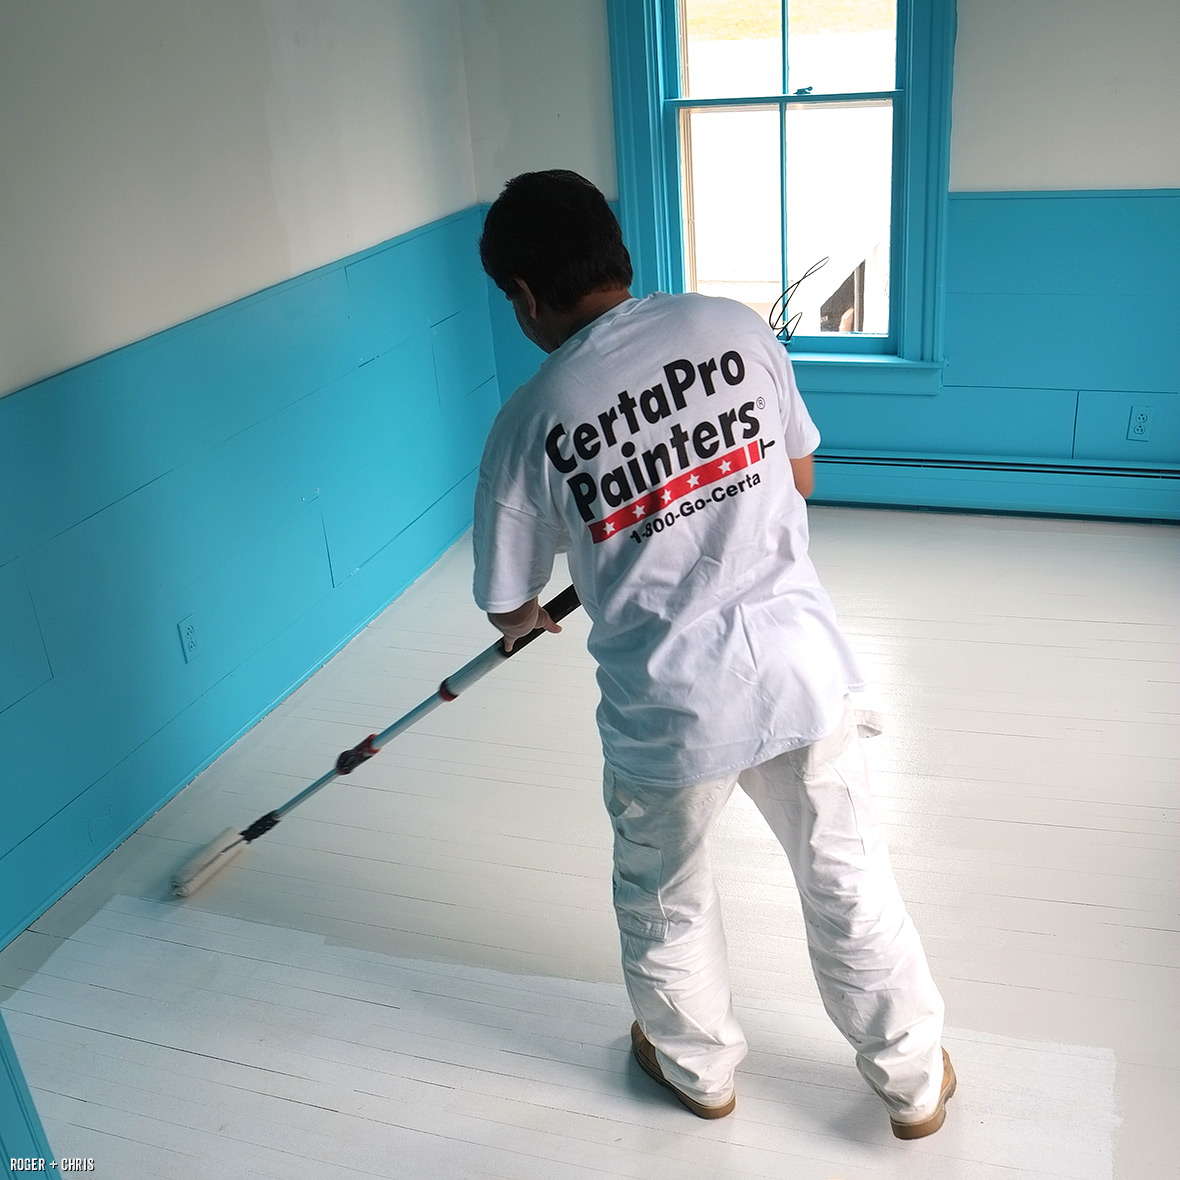 CertaPro paints the floors